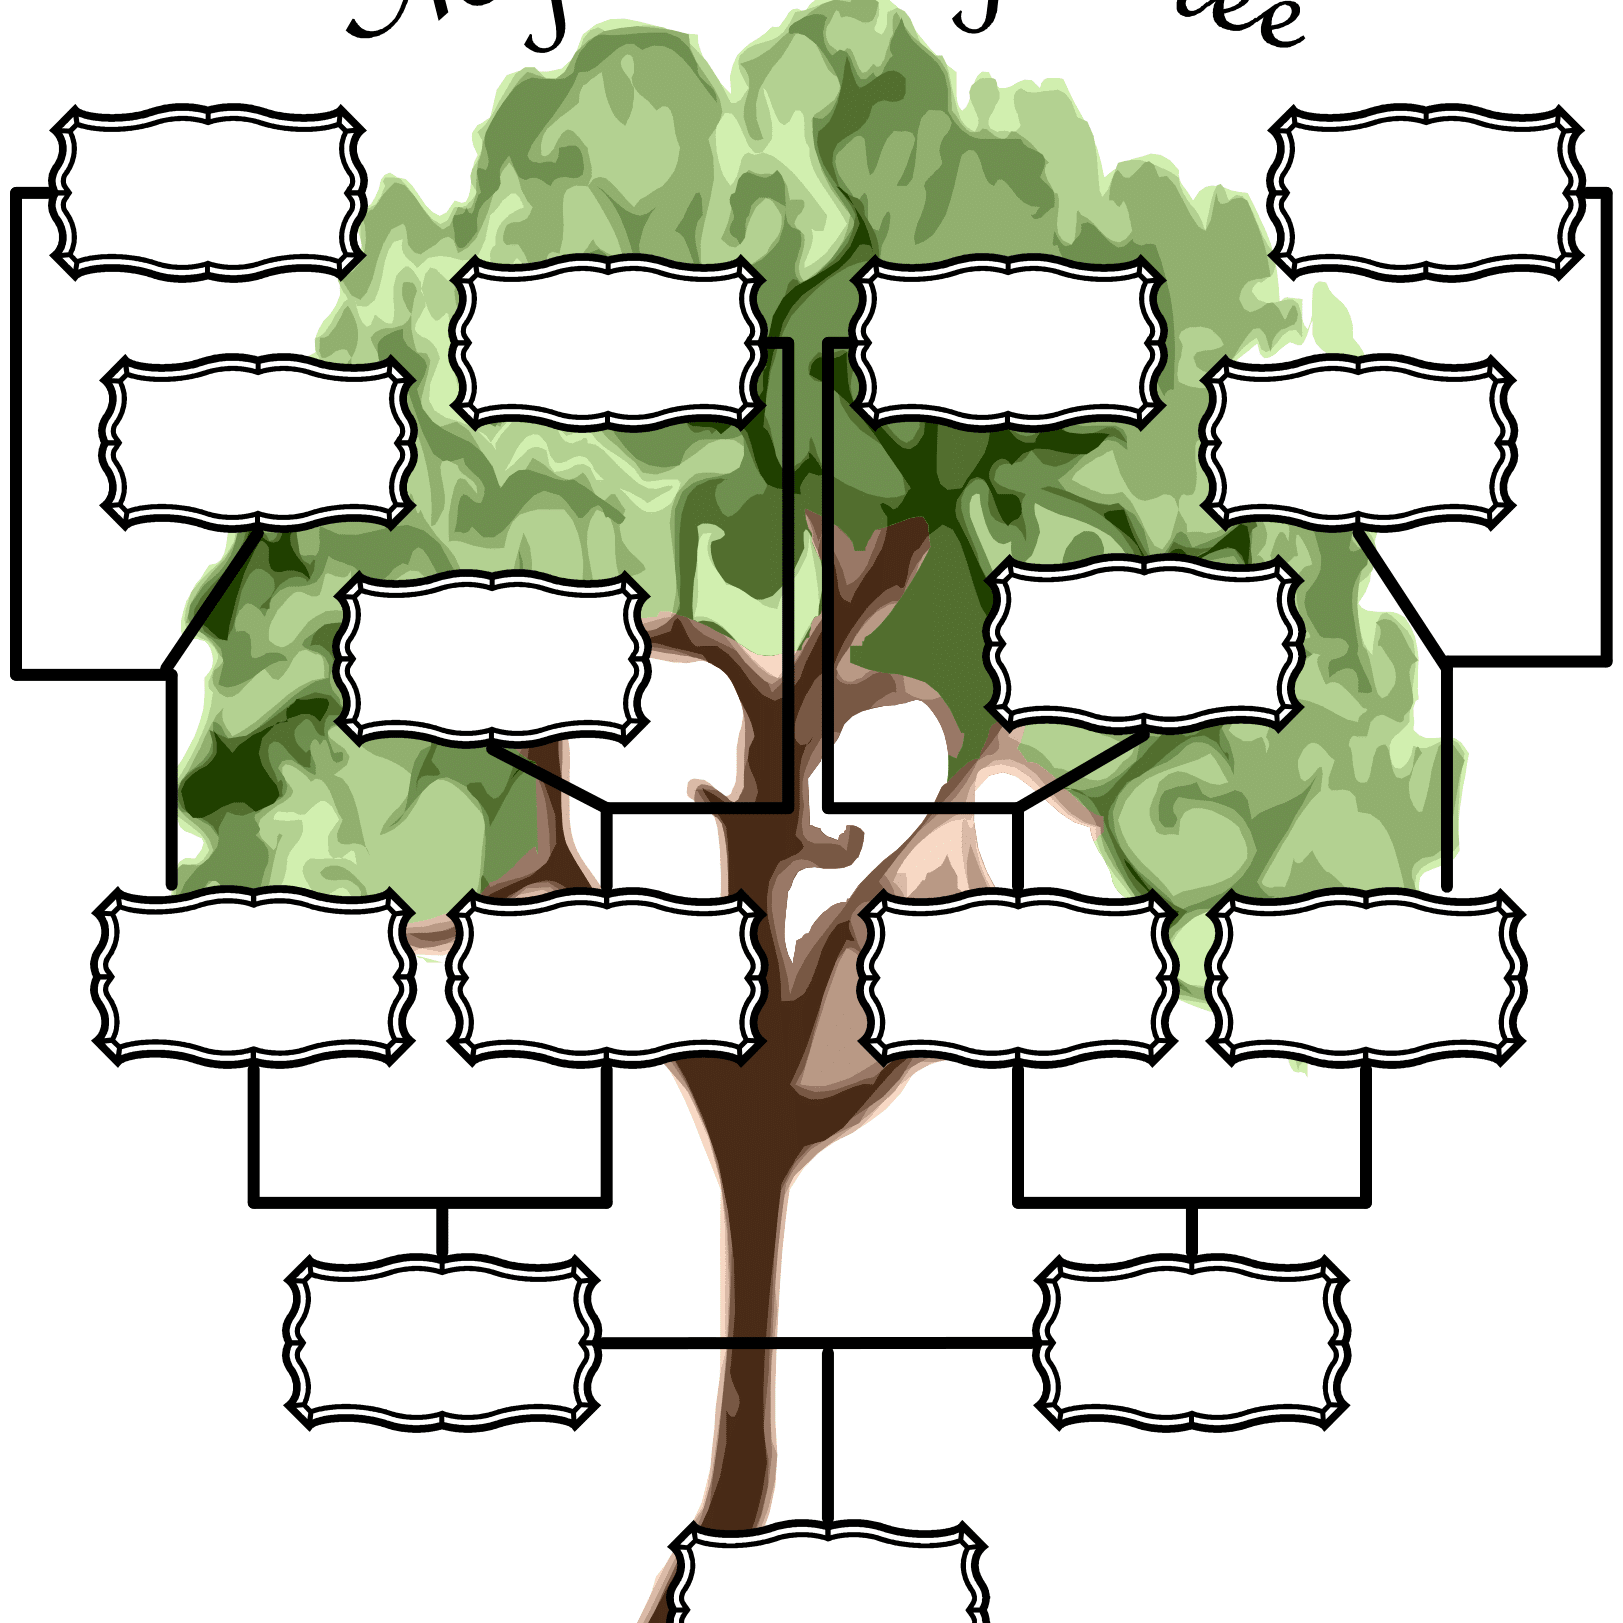 Семейное дерево (my Family Tree)